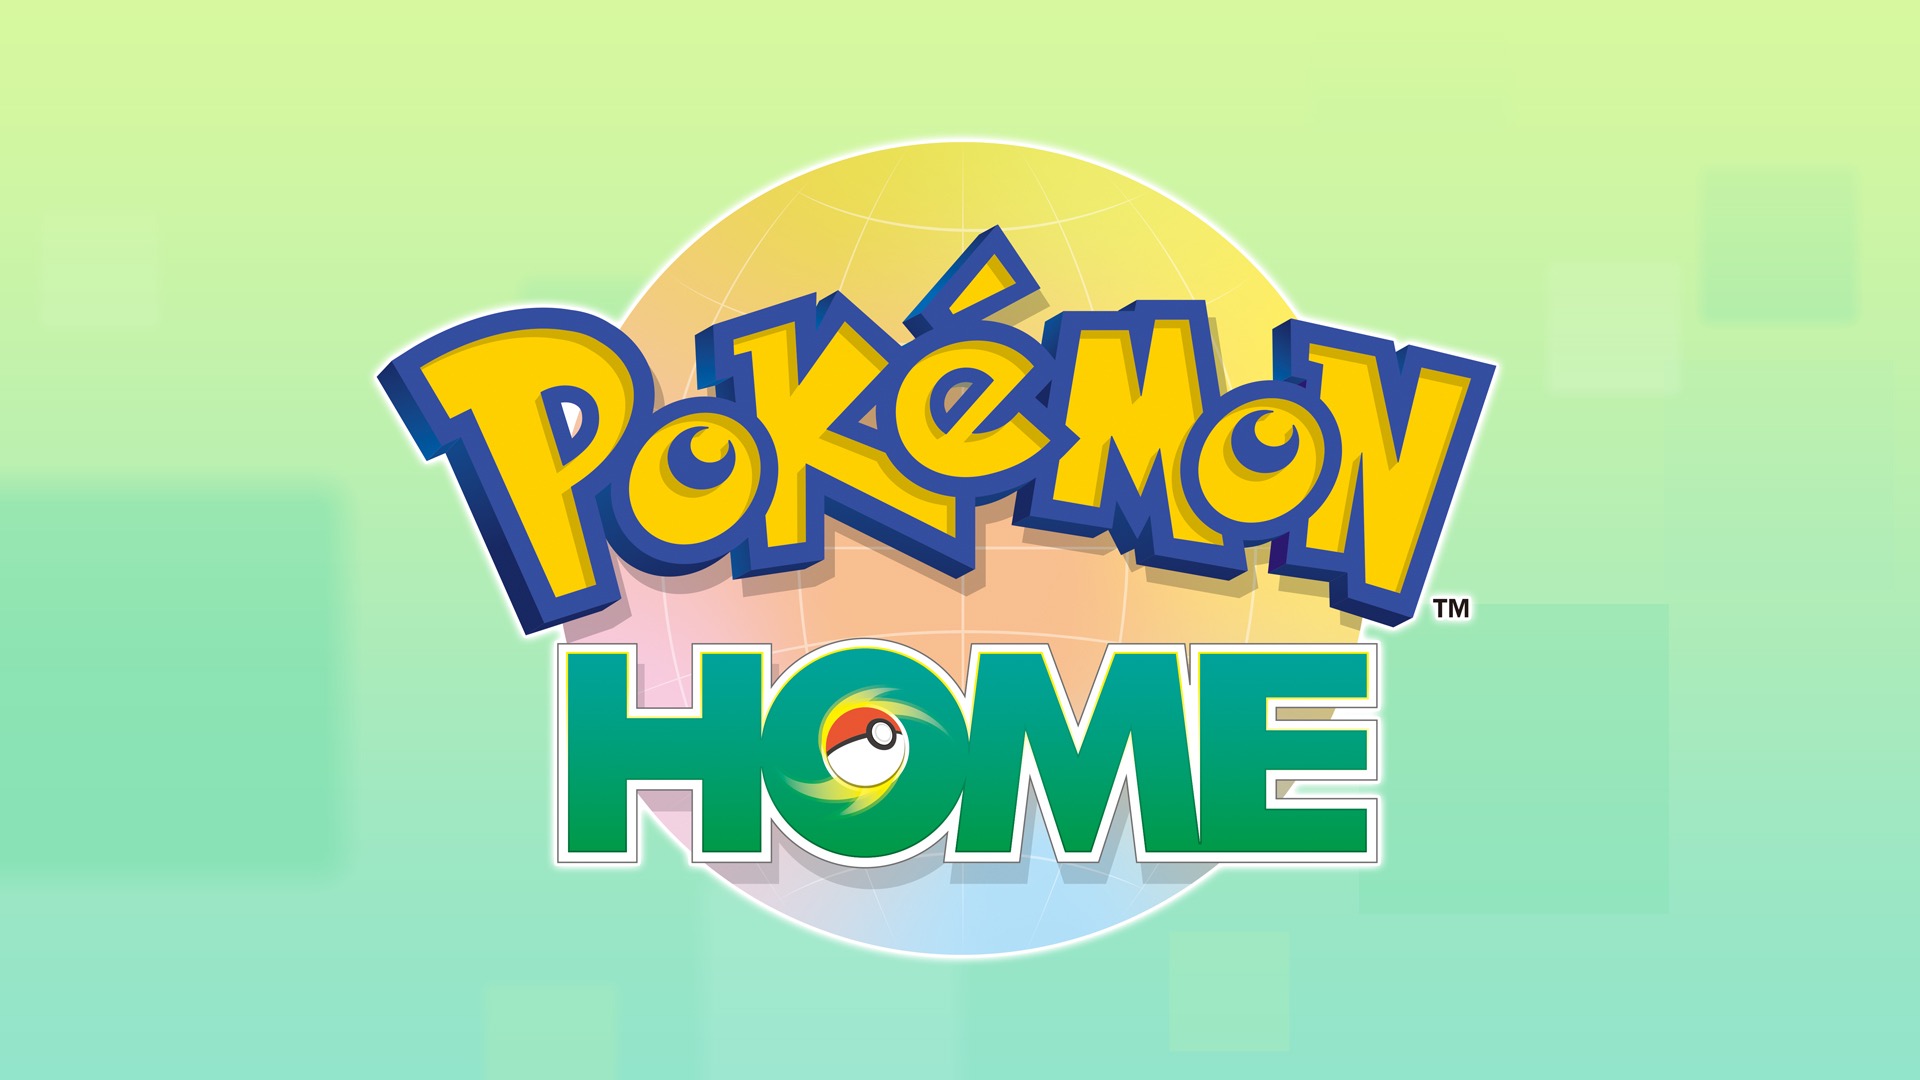 Pokémon Go - Pokémon Home